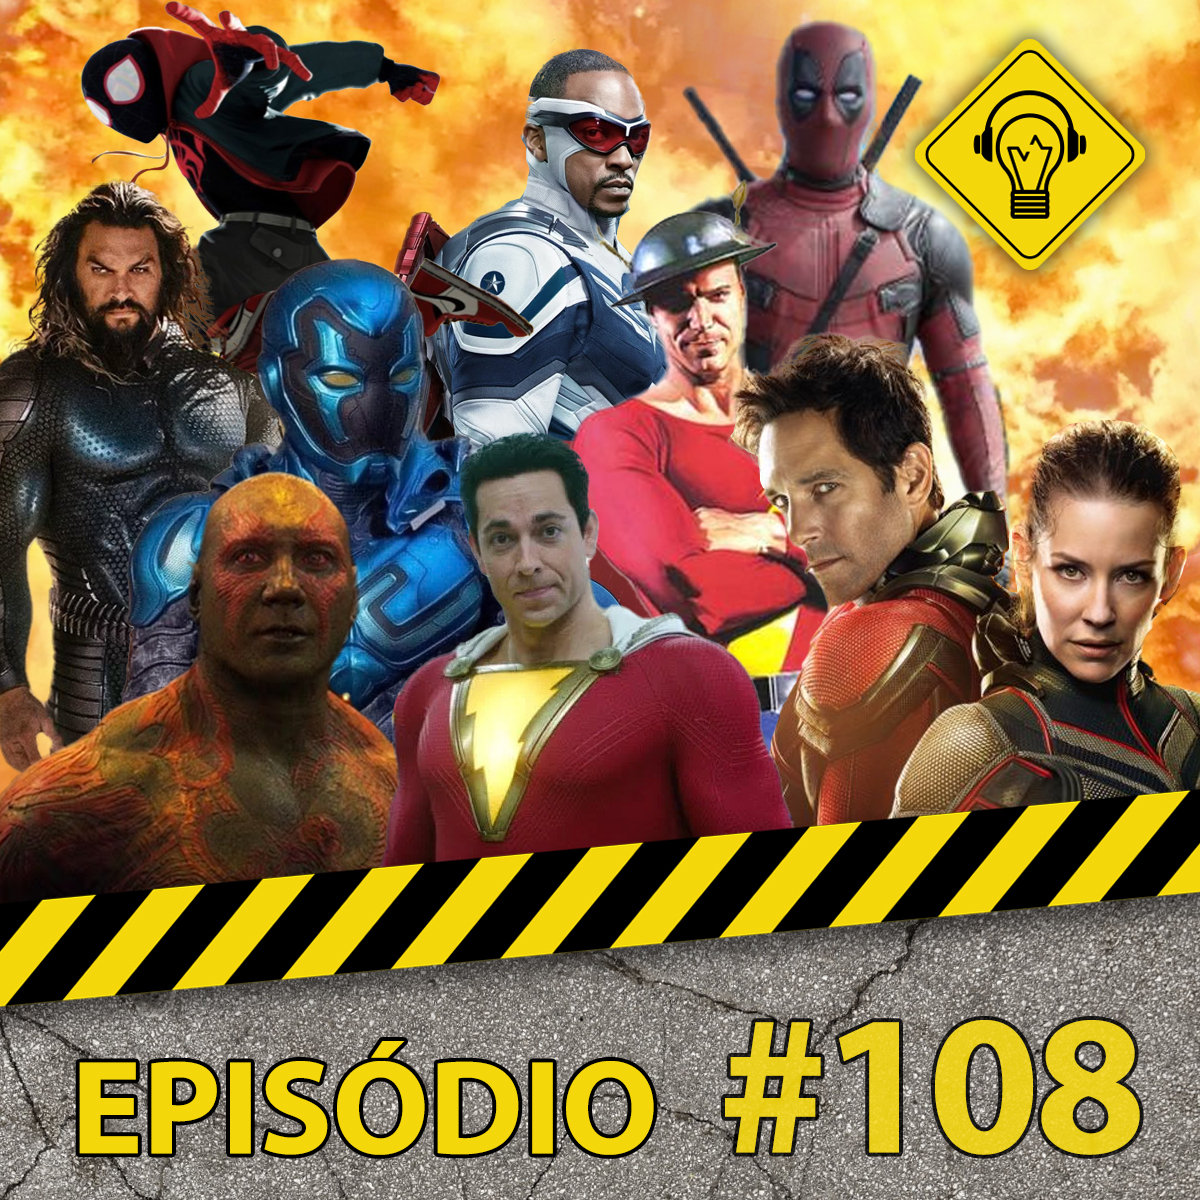 Podcast Ideia Errada #108 Filmes de heróis do futuro!